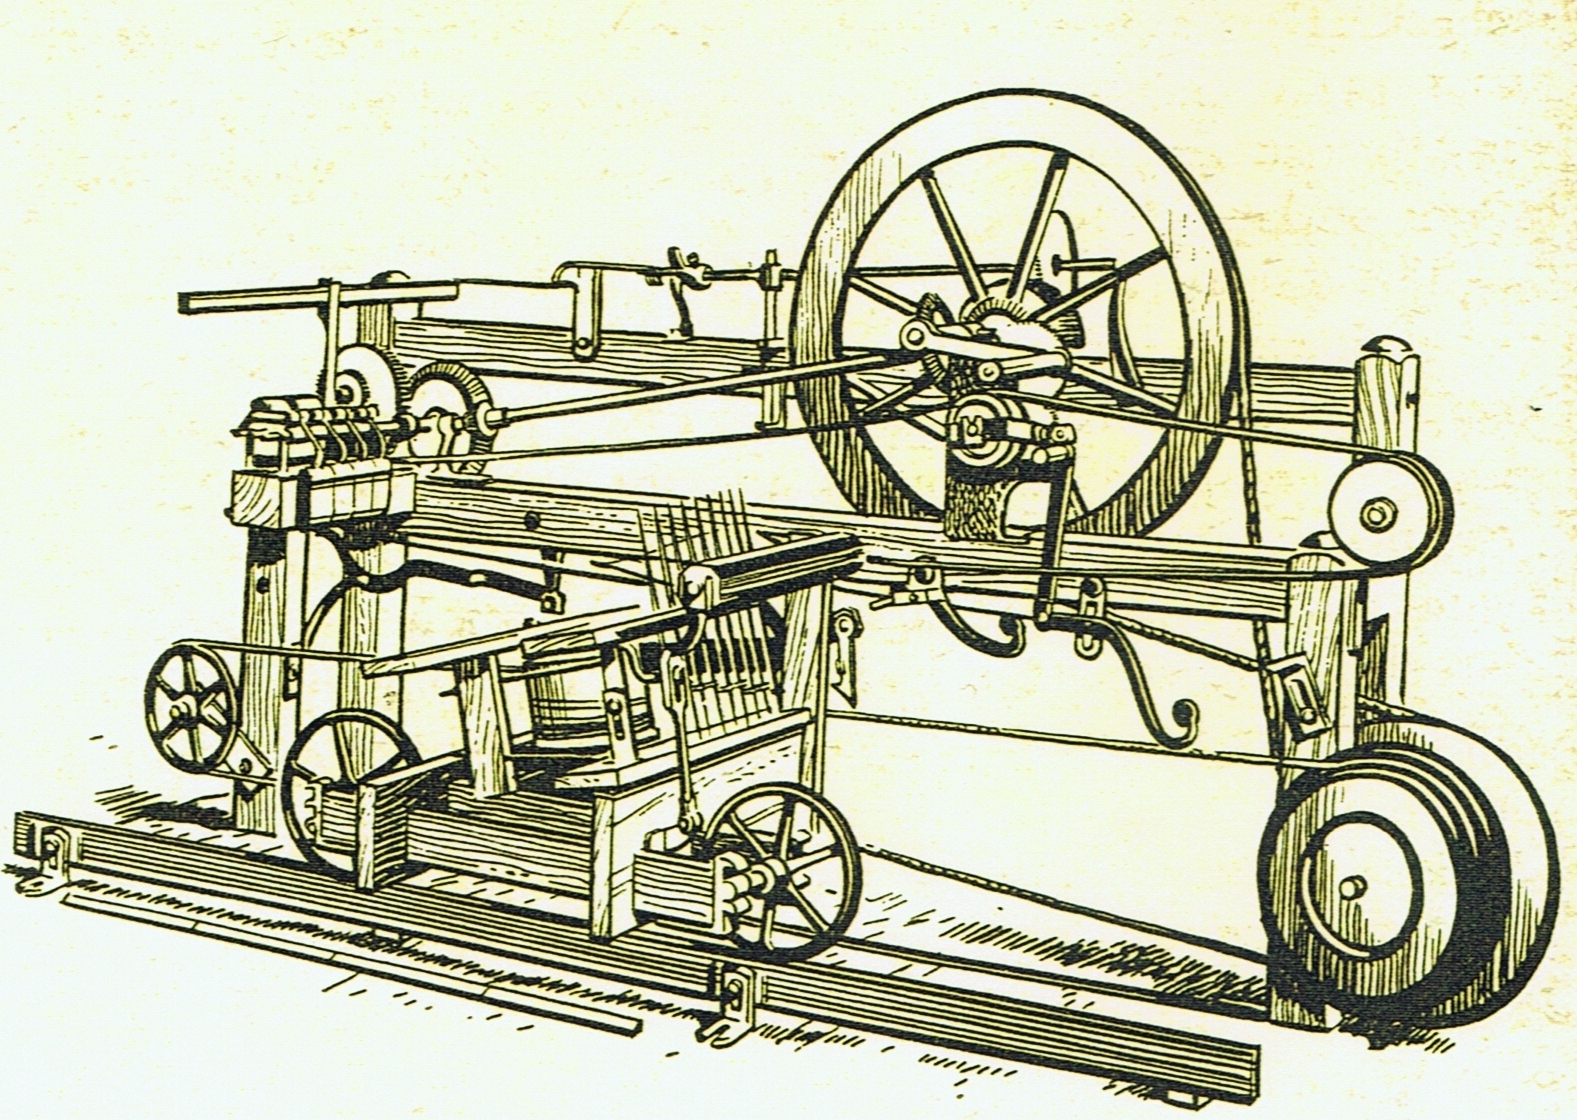 Сделай 1800. 1779: Прядильная Мюль-машина: Сэмюэл Кромптон. Сэмюэл Кромптон Прядильная машина. Прядильная Мюль машина. Мюль машина Кромптона.